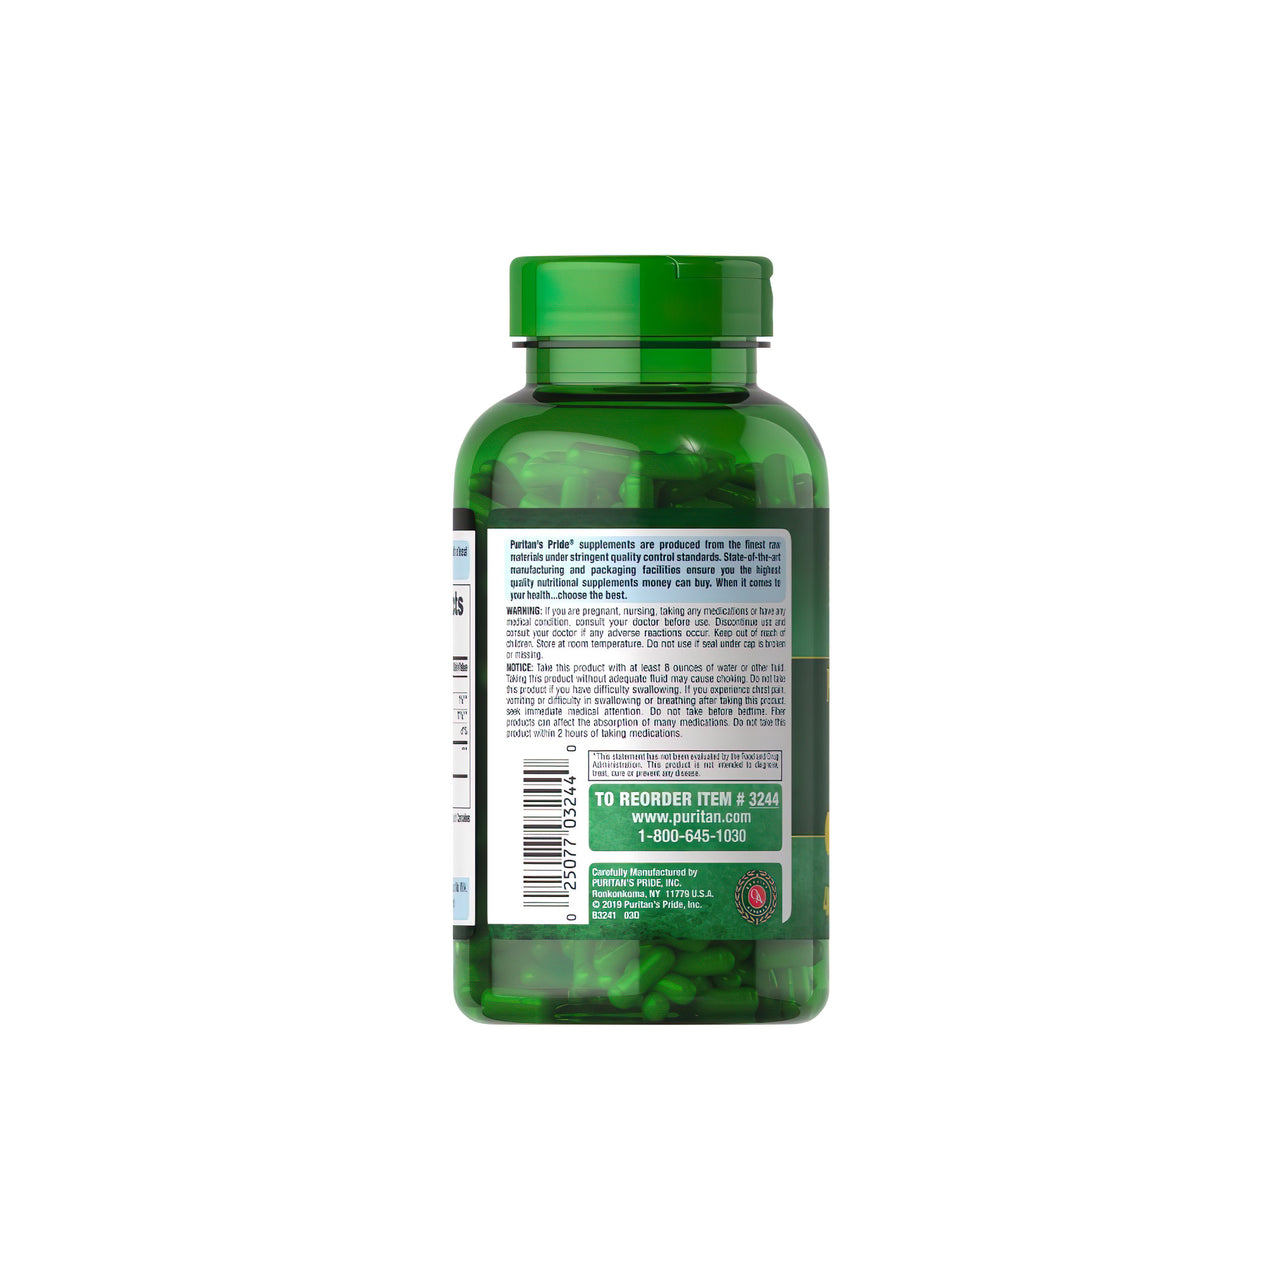 Eine Flasche Psyllium Husks 500 mg 400 Rapid Release Capsules von Puritan's Pride mit verdauungsfördernden und darmschonenden Eigenschaften auf weißem Hintergrund.